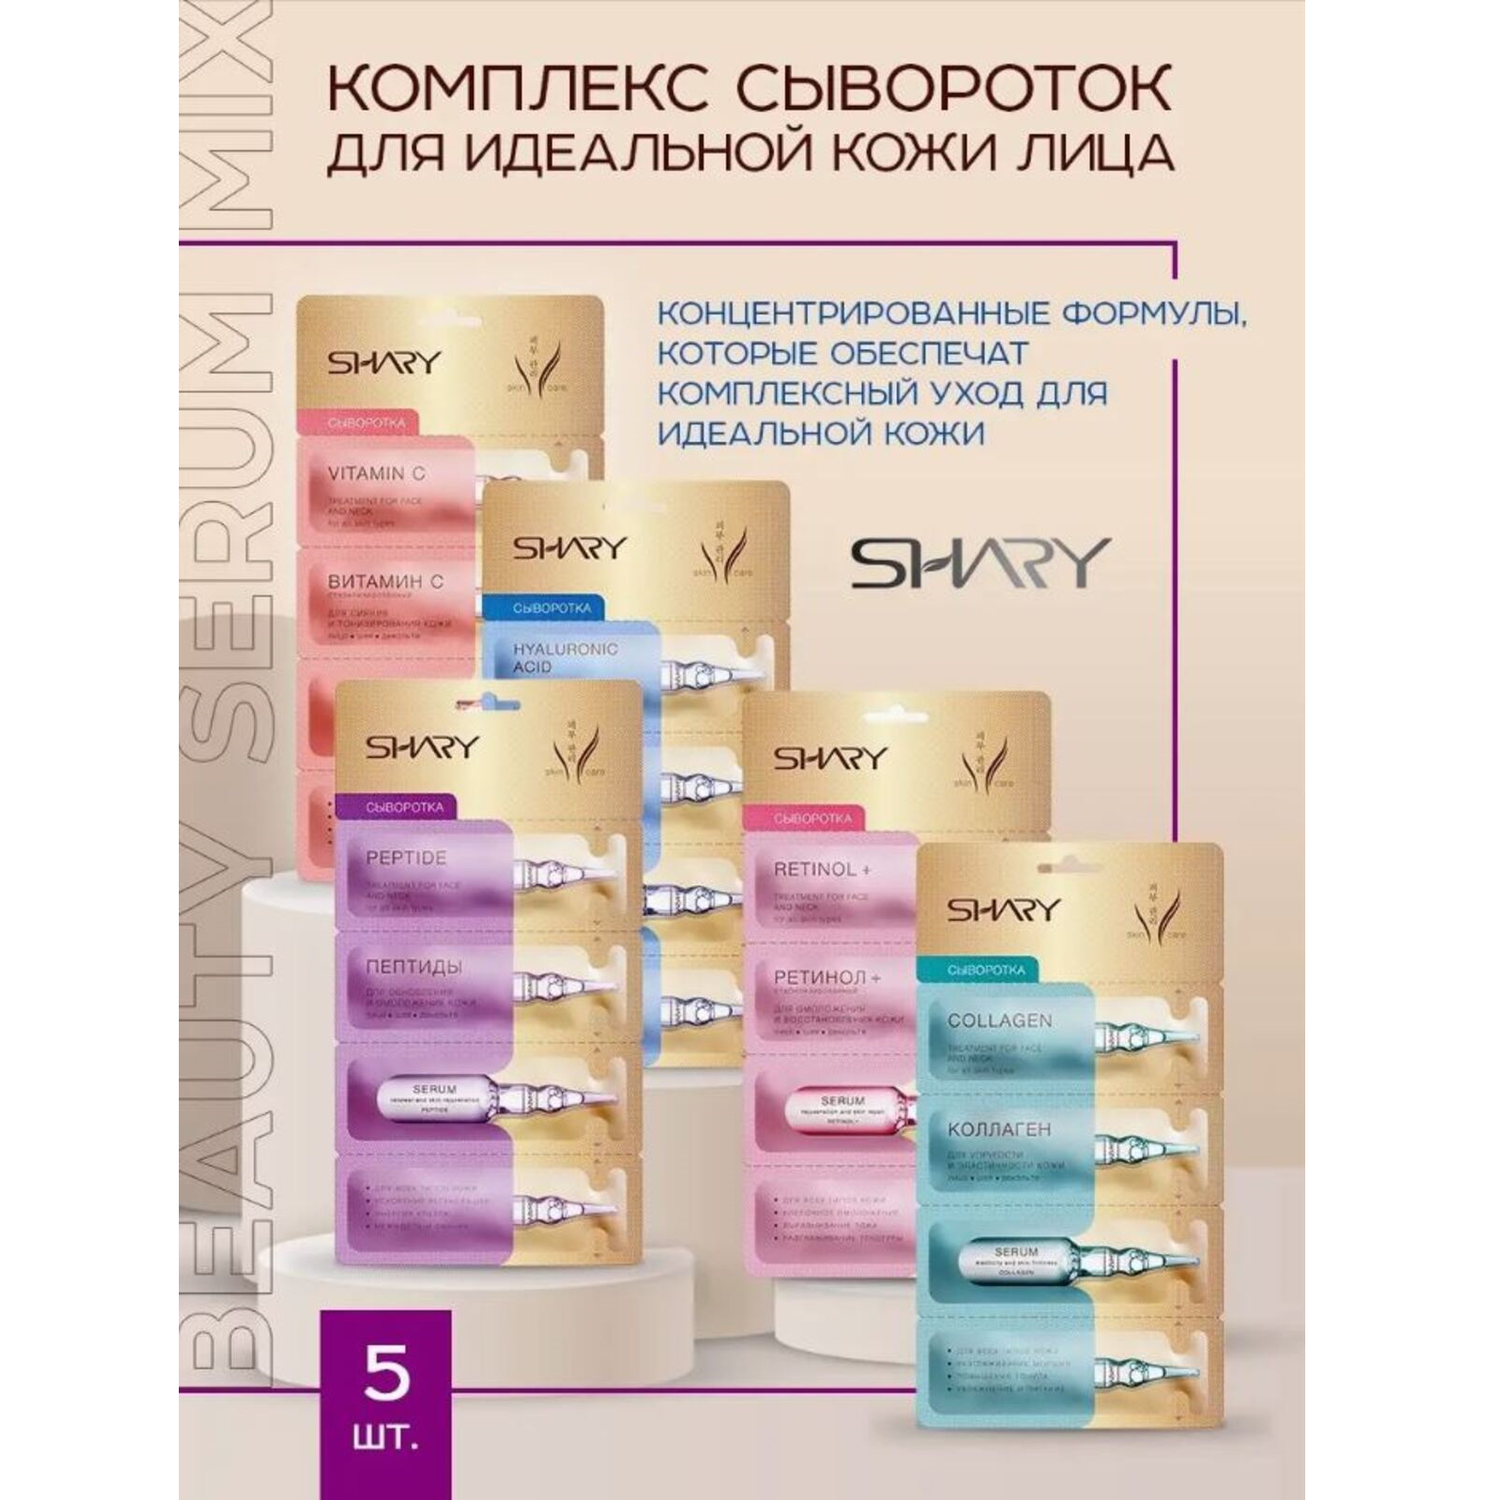 Комплекс сывороток SHARY для идеальной кожи лица beauty serum mix 5 шт - фото 2